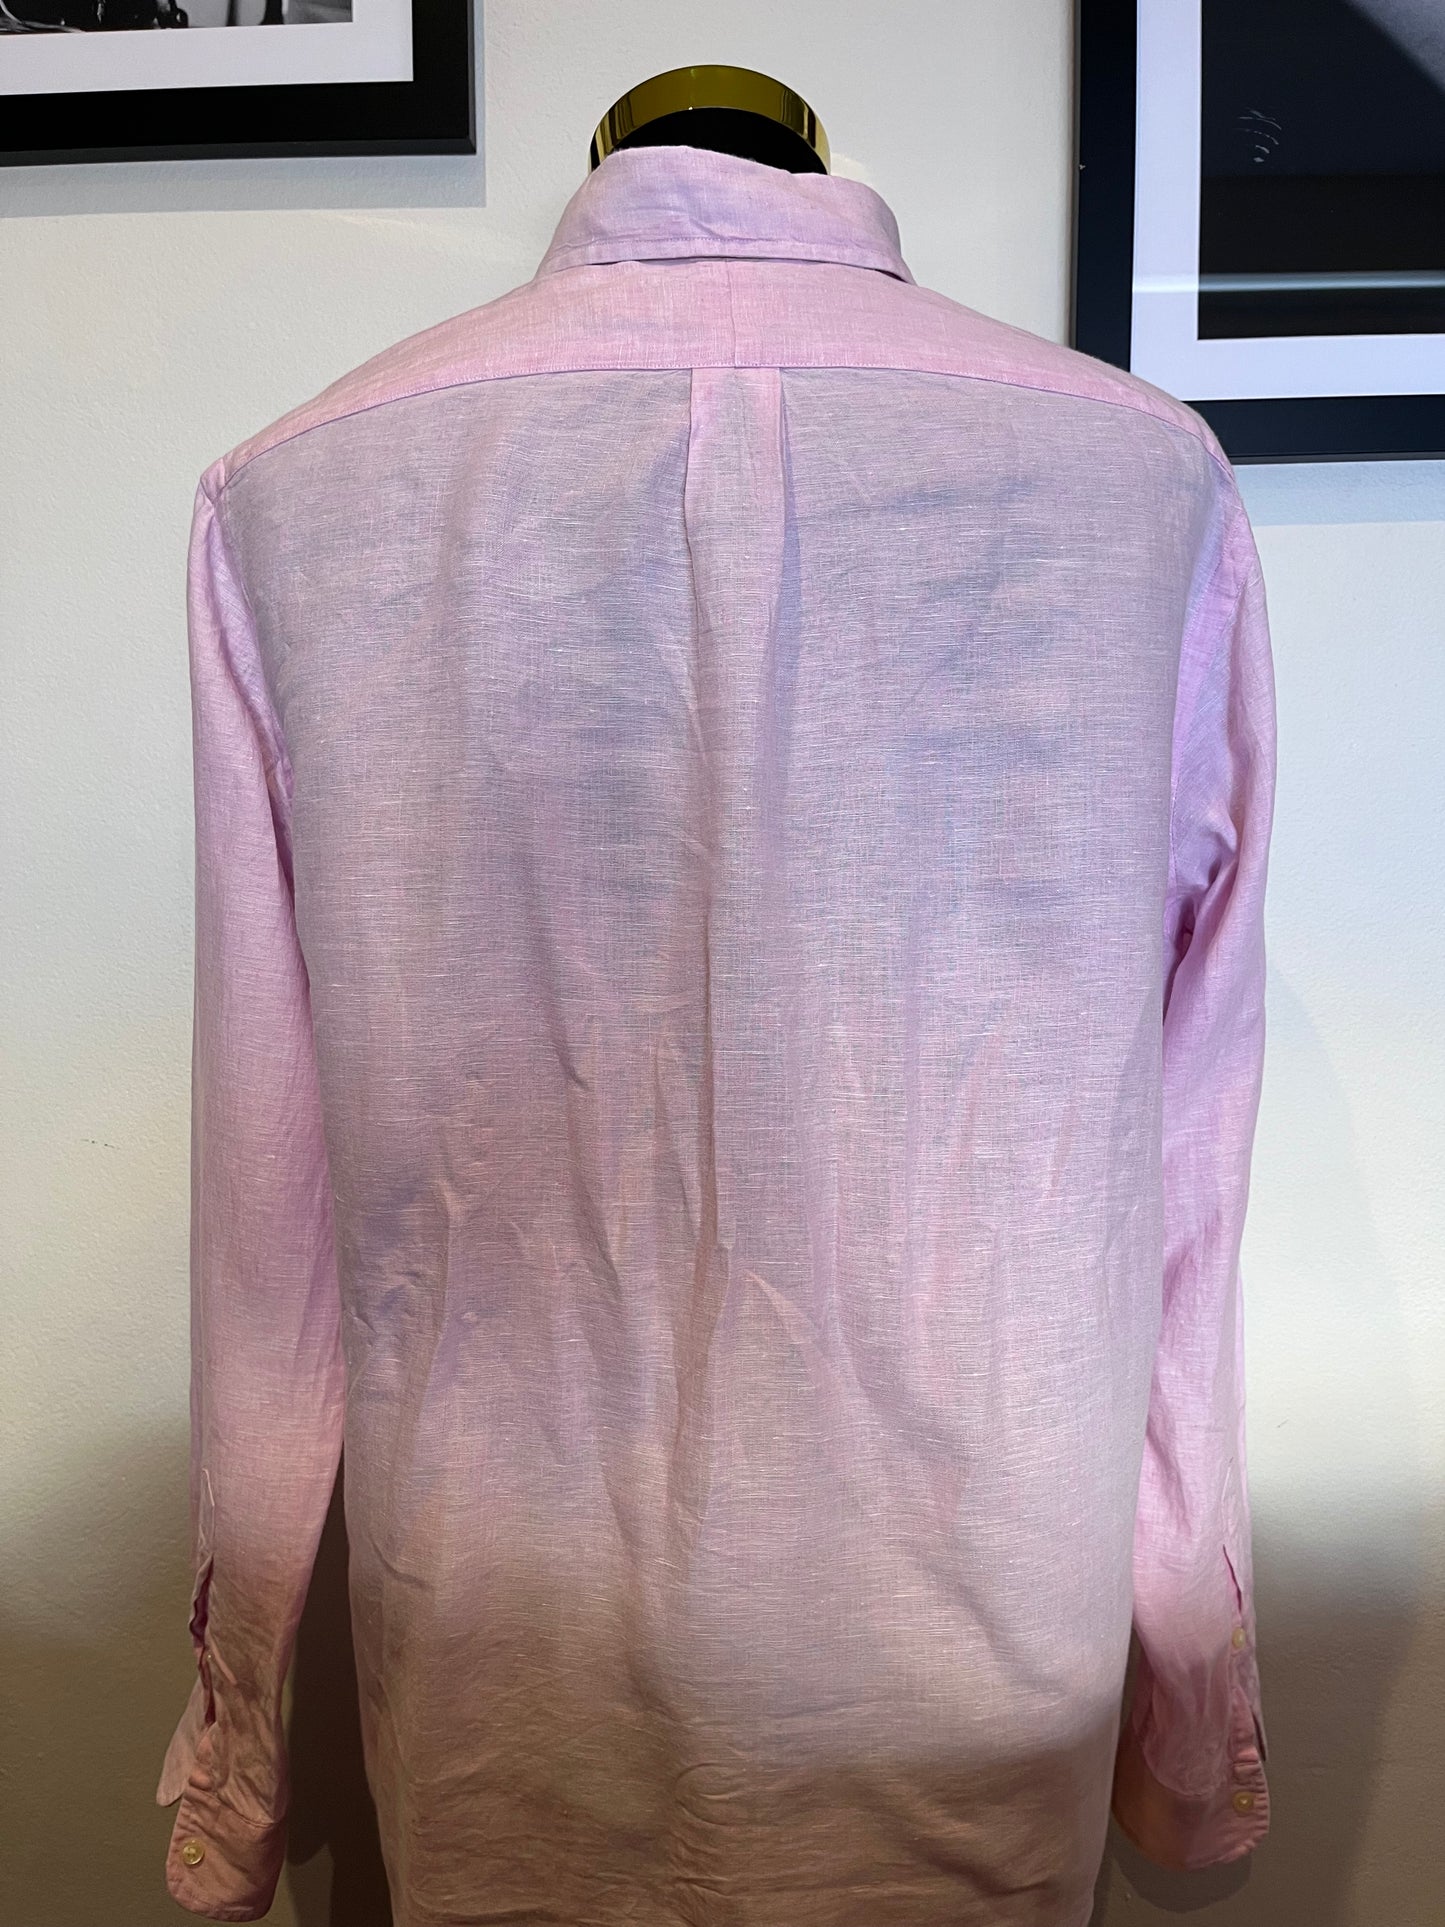 Ralph Lauren 100% Cotton Linen Pink Shirt Size Large Classic Fit